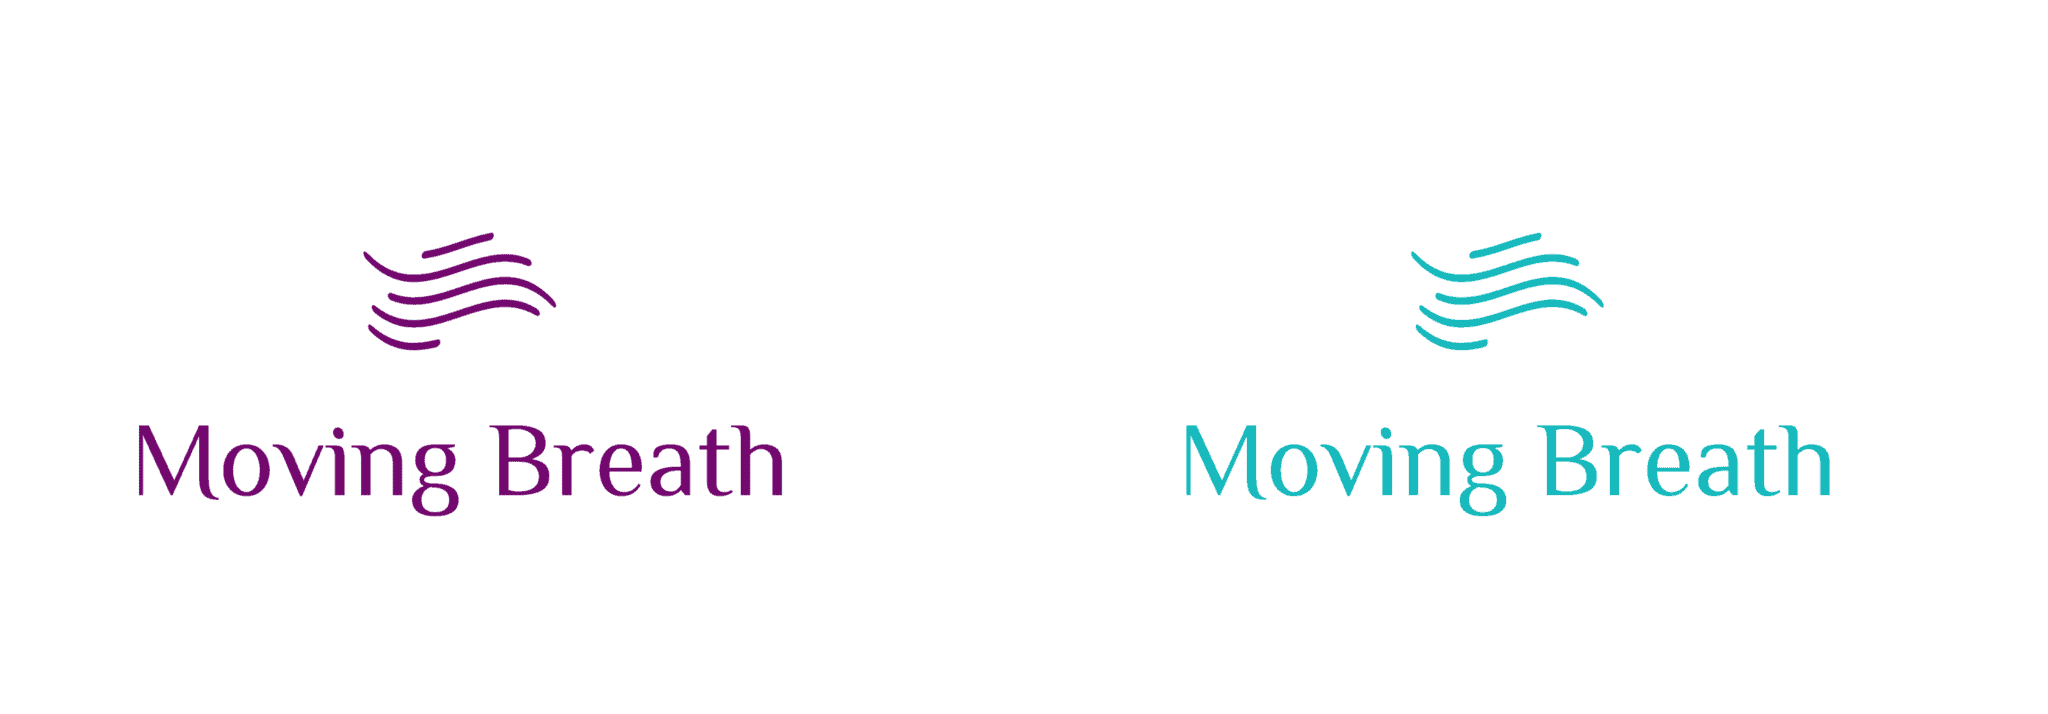 Dos ejemplos de logos